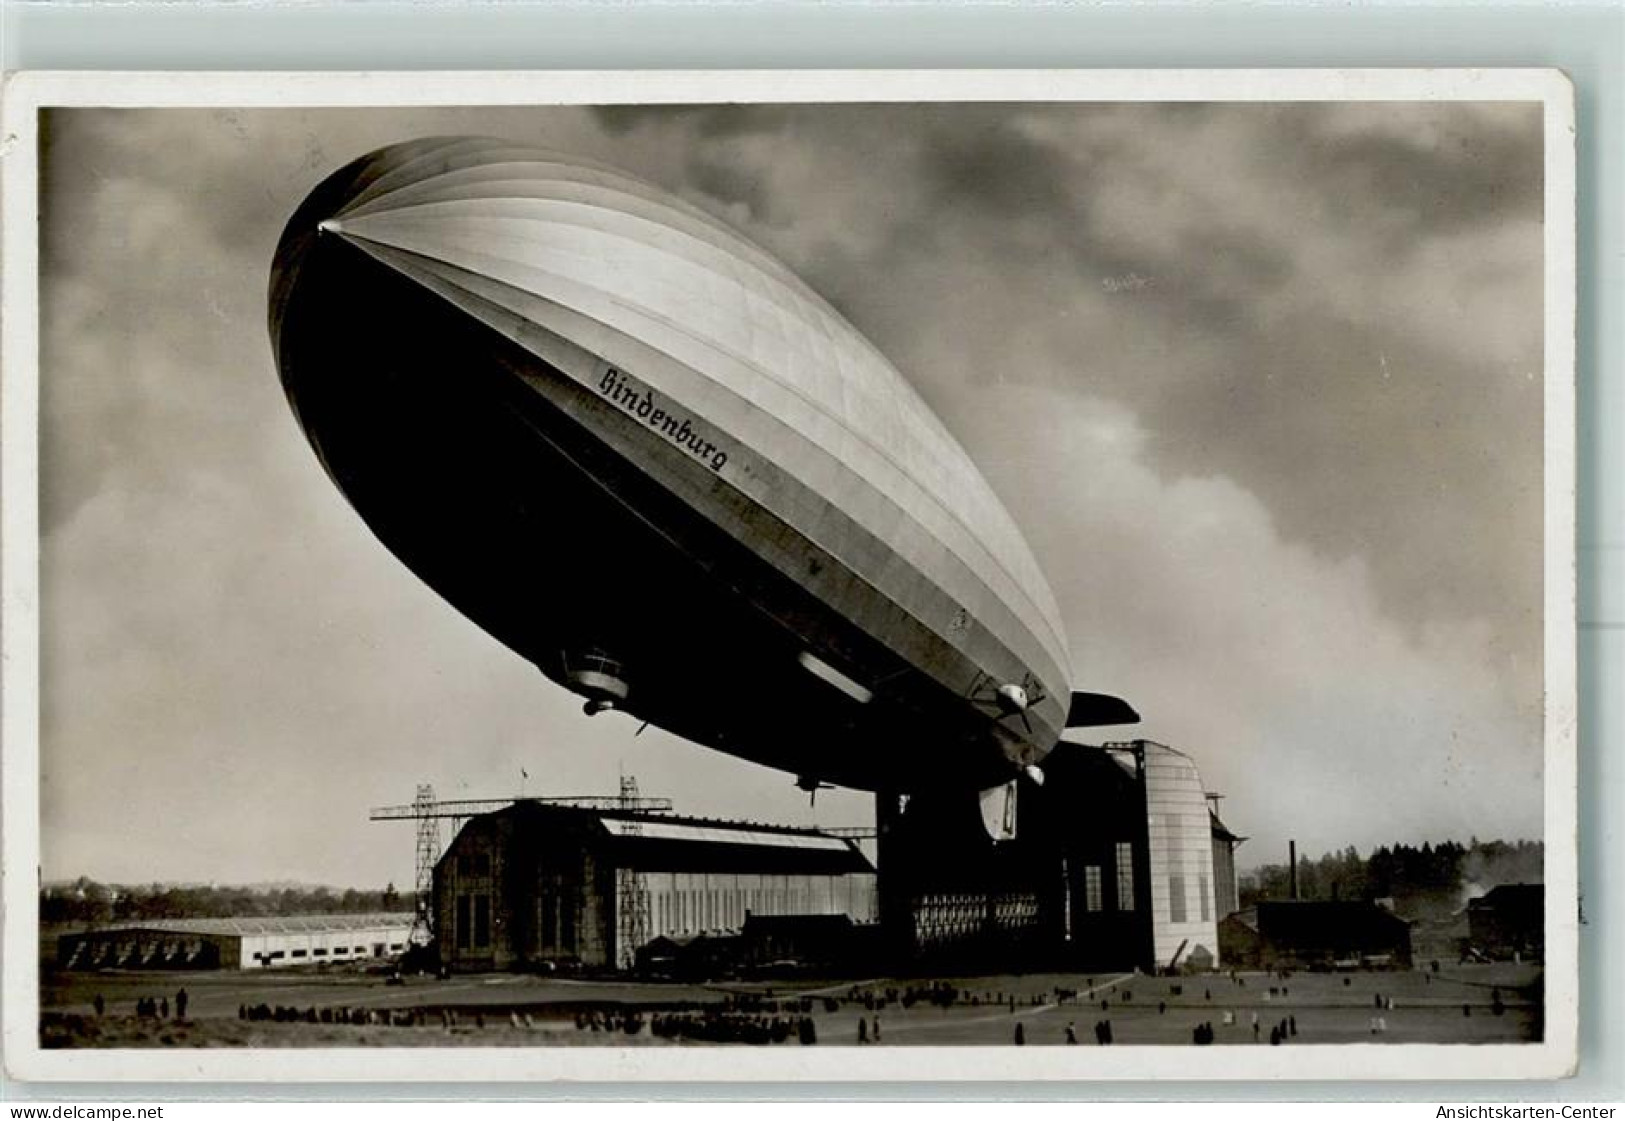 13225907 - Aufstieg LZ 129 Hindenburg AK - Luchtschepen